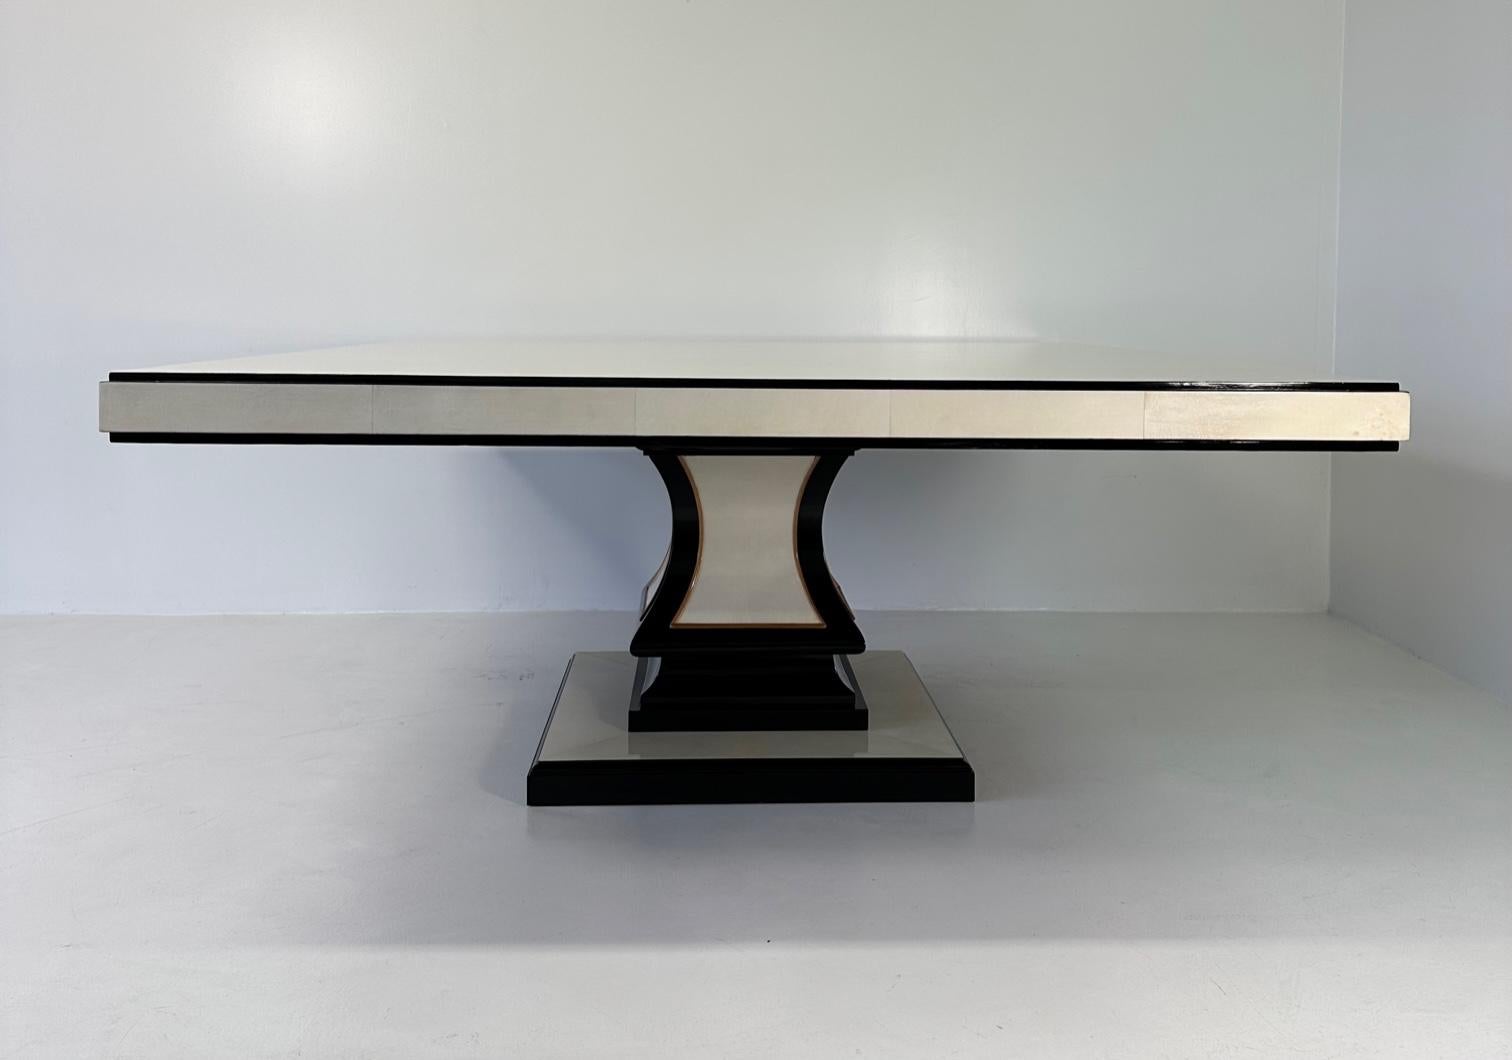 Dieser quadratische Art-Déco-Tisch wurde in den 1980er Jahren in Italien hergestellt.
Die Platte, der Sockel und die zentrale Säule sind aus Pergament, umrahmt von schwarz lackierten und Ahornprofilen. Insbesondere die Oberseite besteht aus